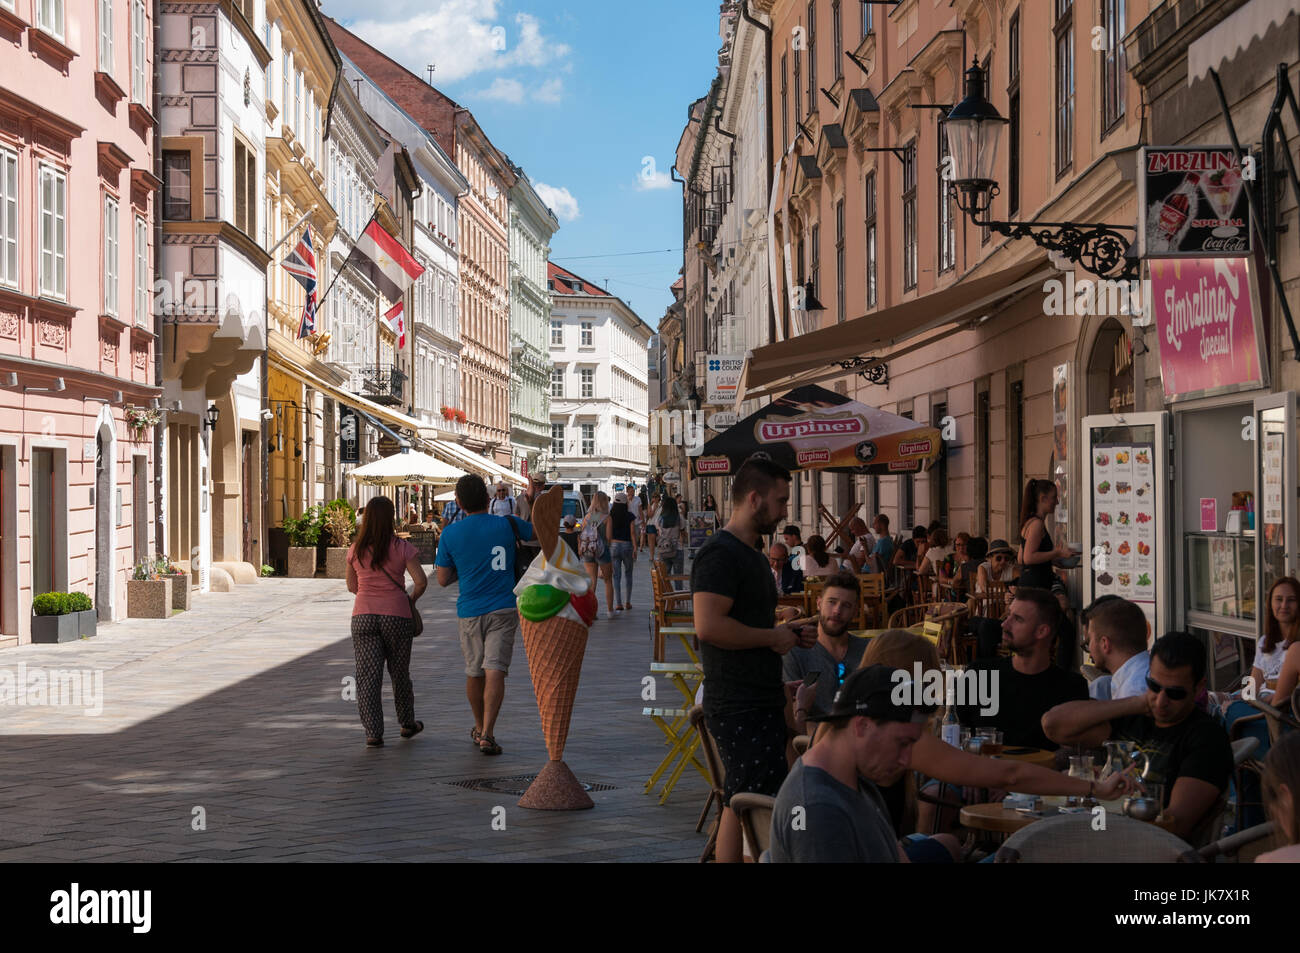 Tourists at Panska street, Bratislava, Slovakia Stock Photo